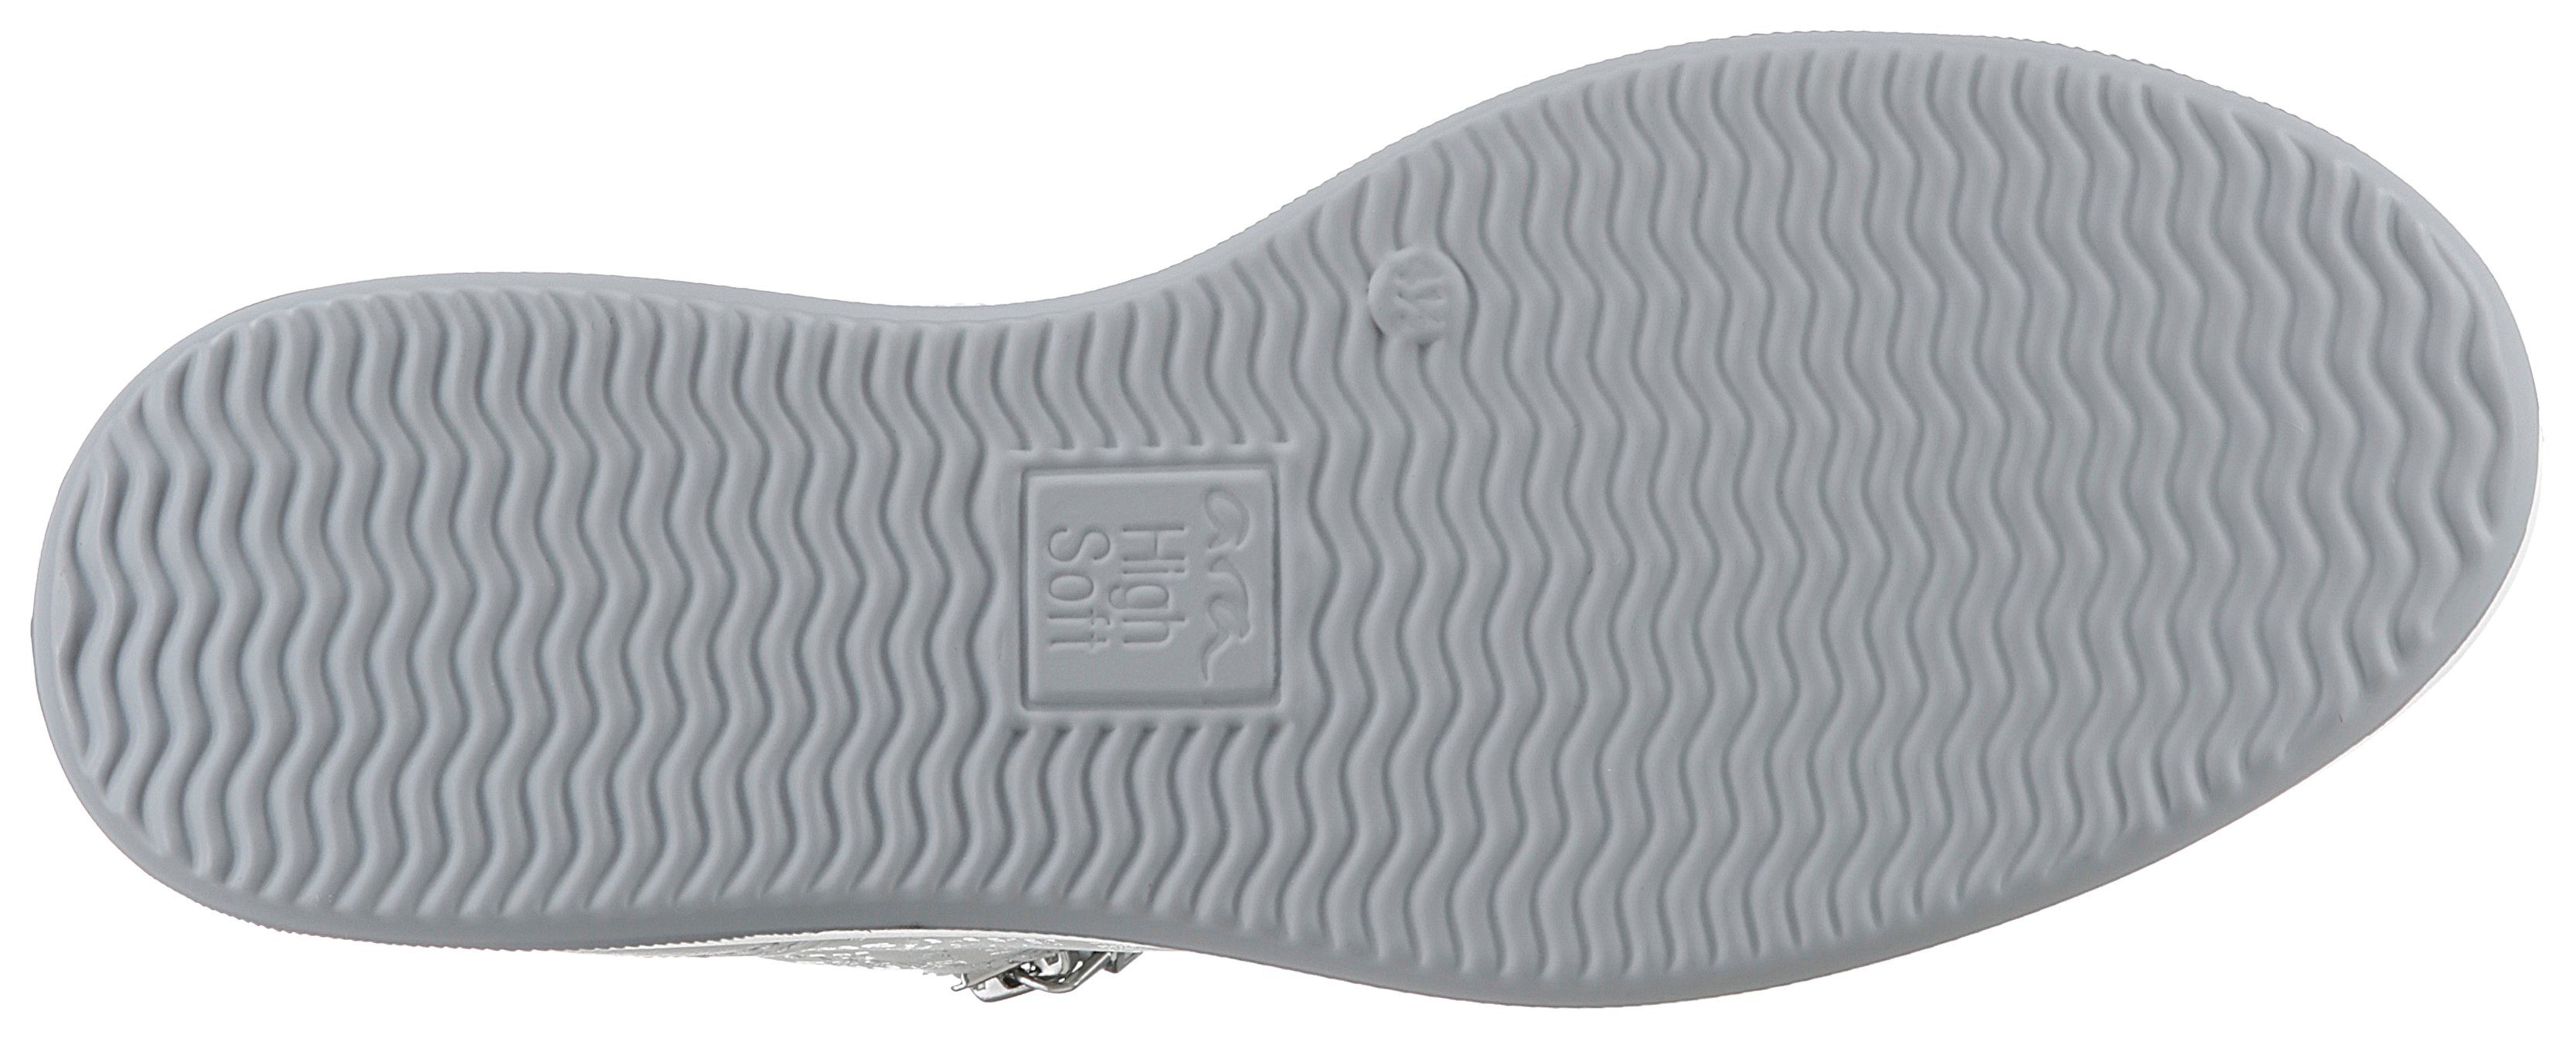 Ara ROMA Sneaker mit herausnehmbarem H-Weite Soft-Fußbett, High offwhite